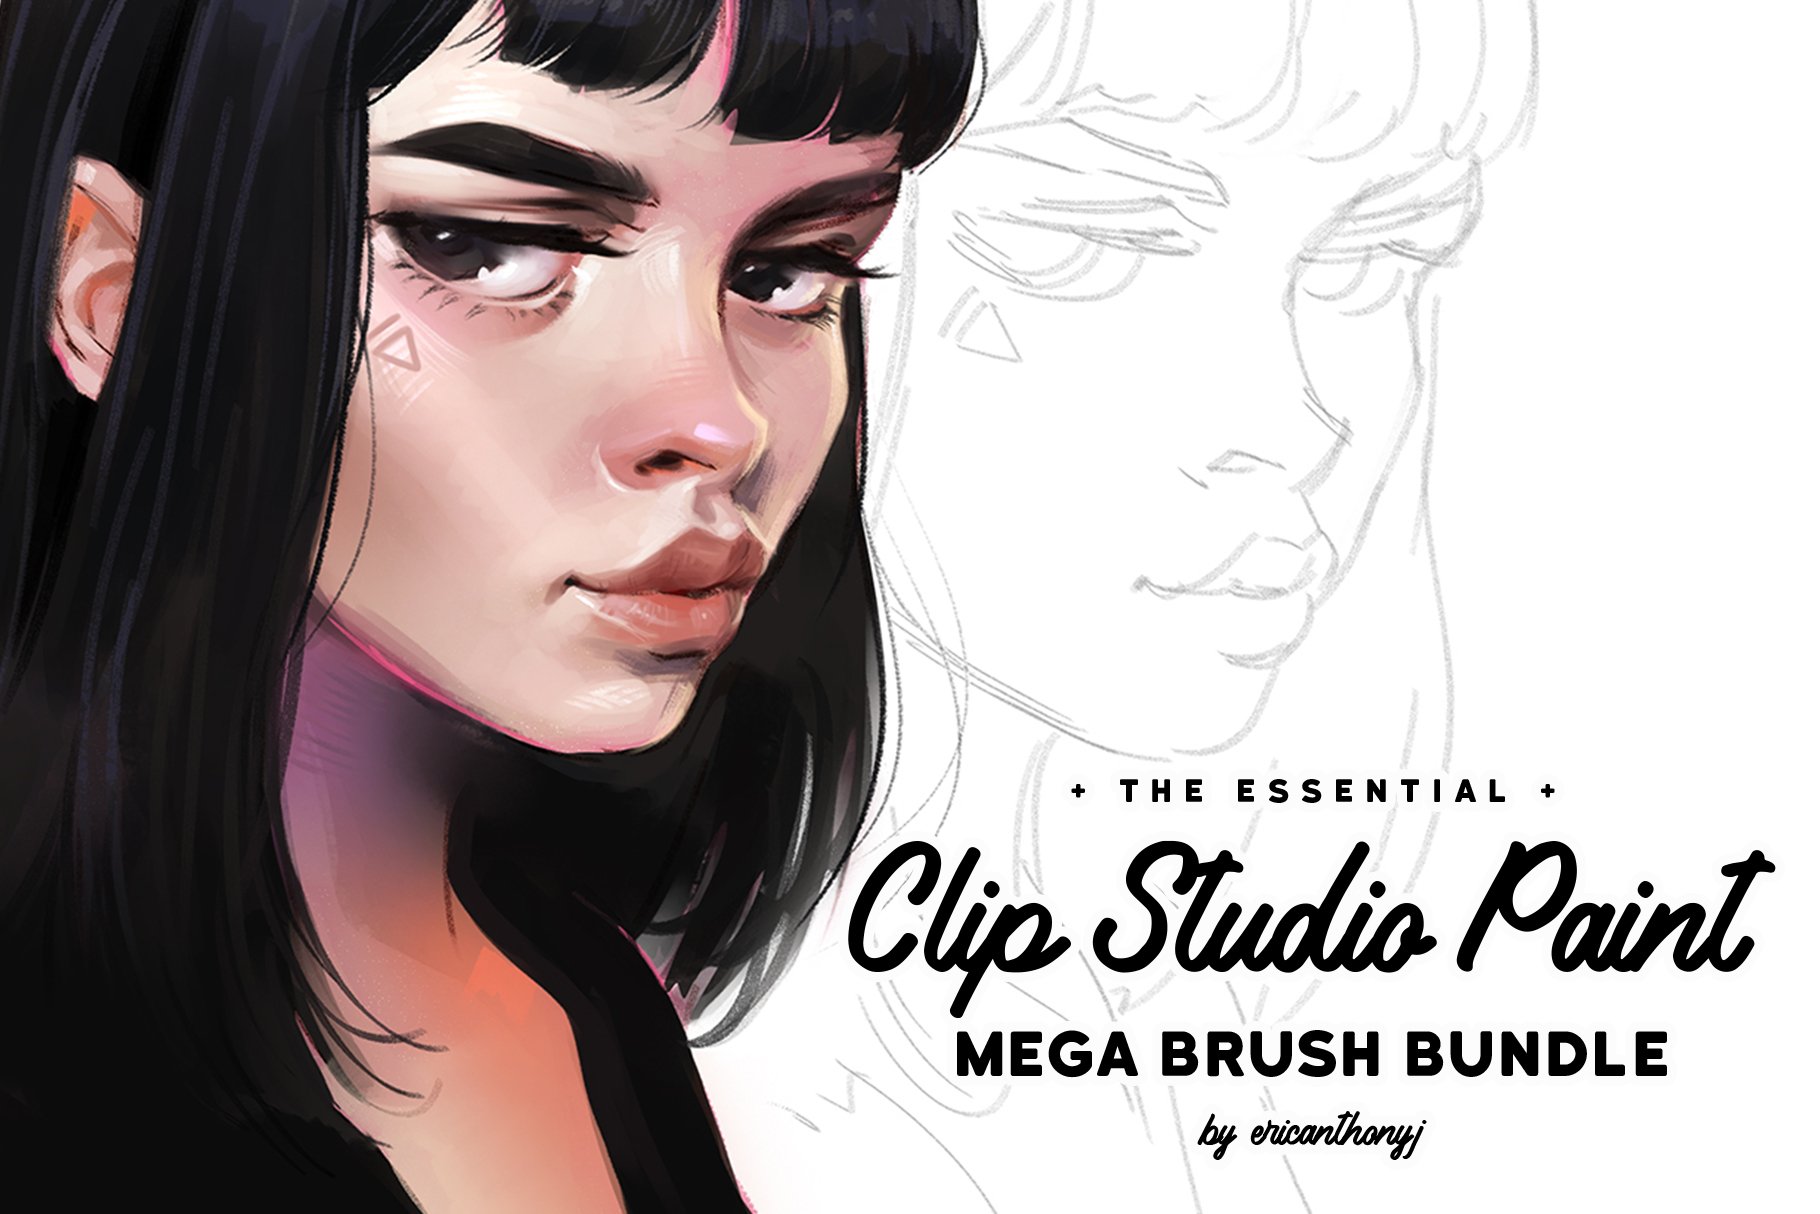 Clip Studio Paint - Mega Bundle cover image.